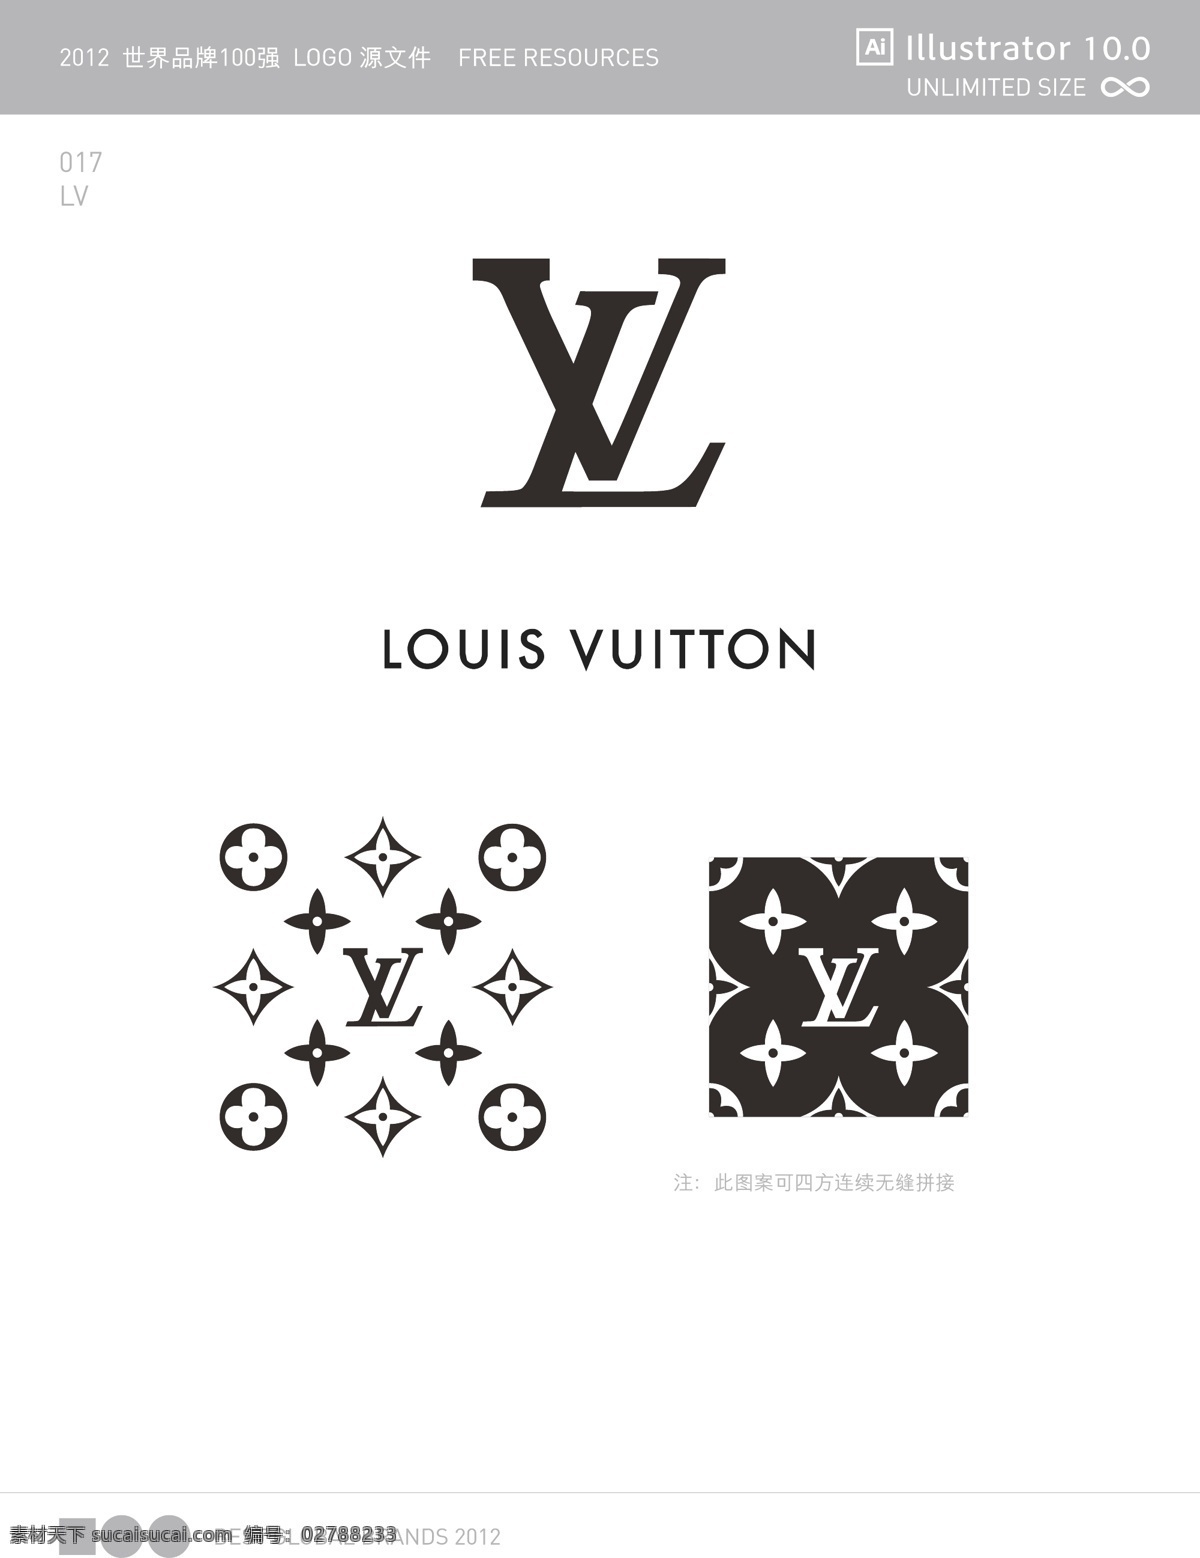 世界 品牌 强 logo 源文件 世界品牌 100强 lv 箱包 vi logo设计